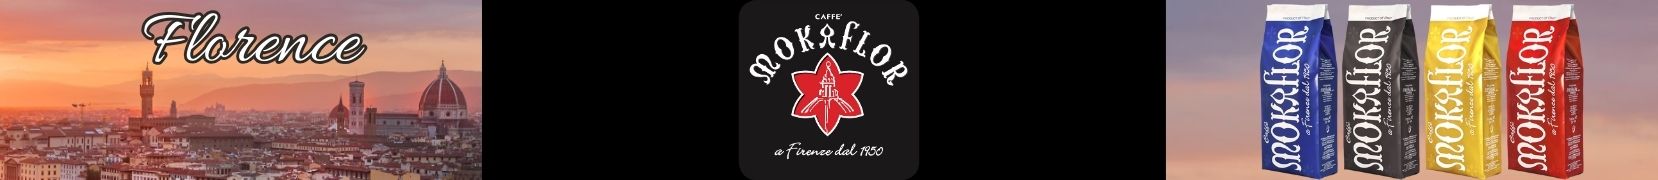 Caffe Mokaflor